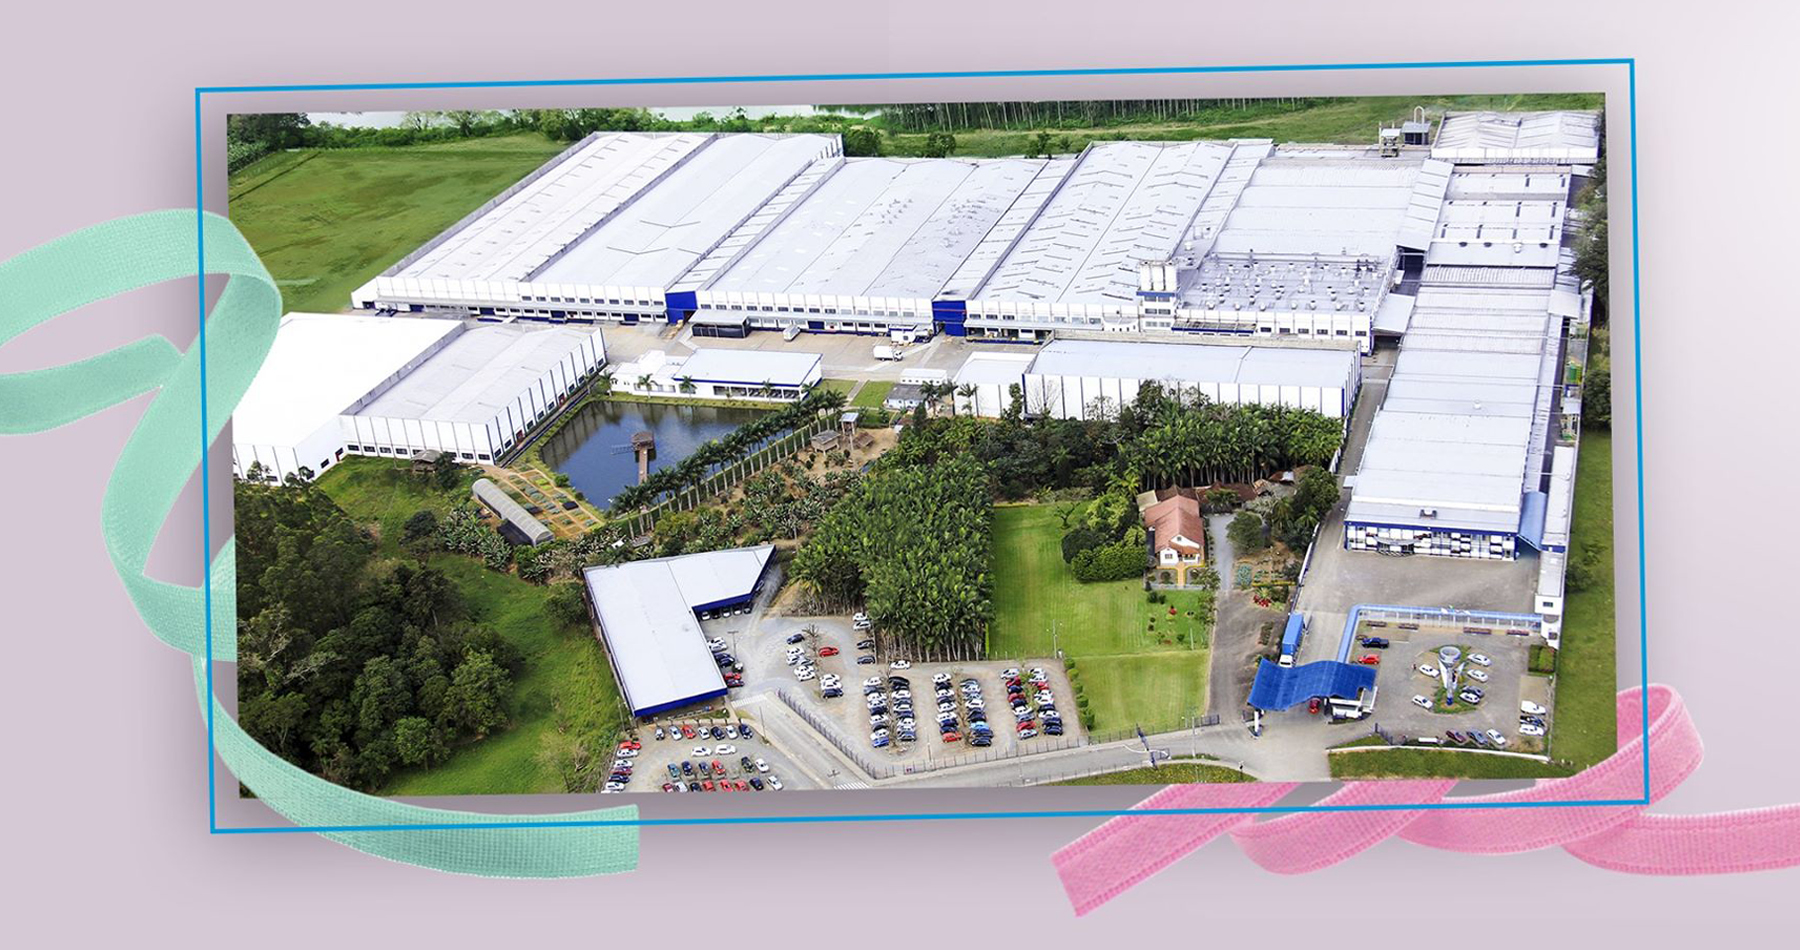 Fábrica de Elásticos Zanotti é a maior desse segmento na América Latina